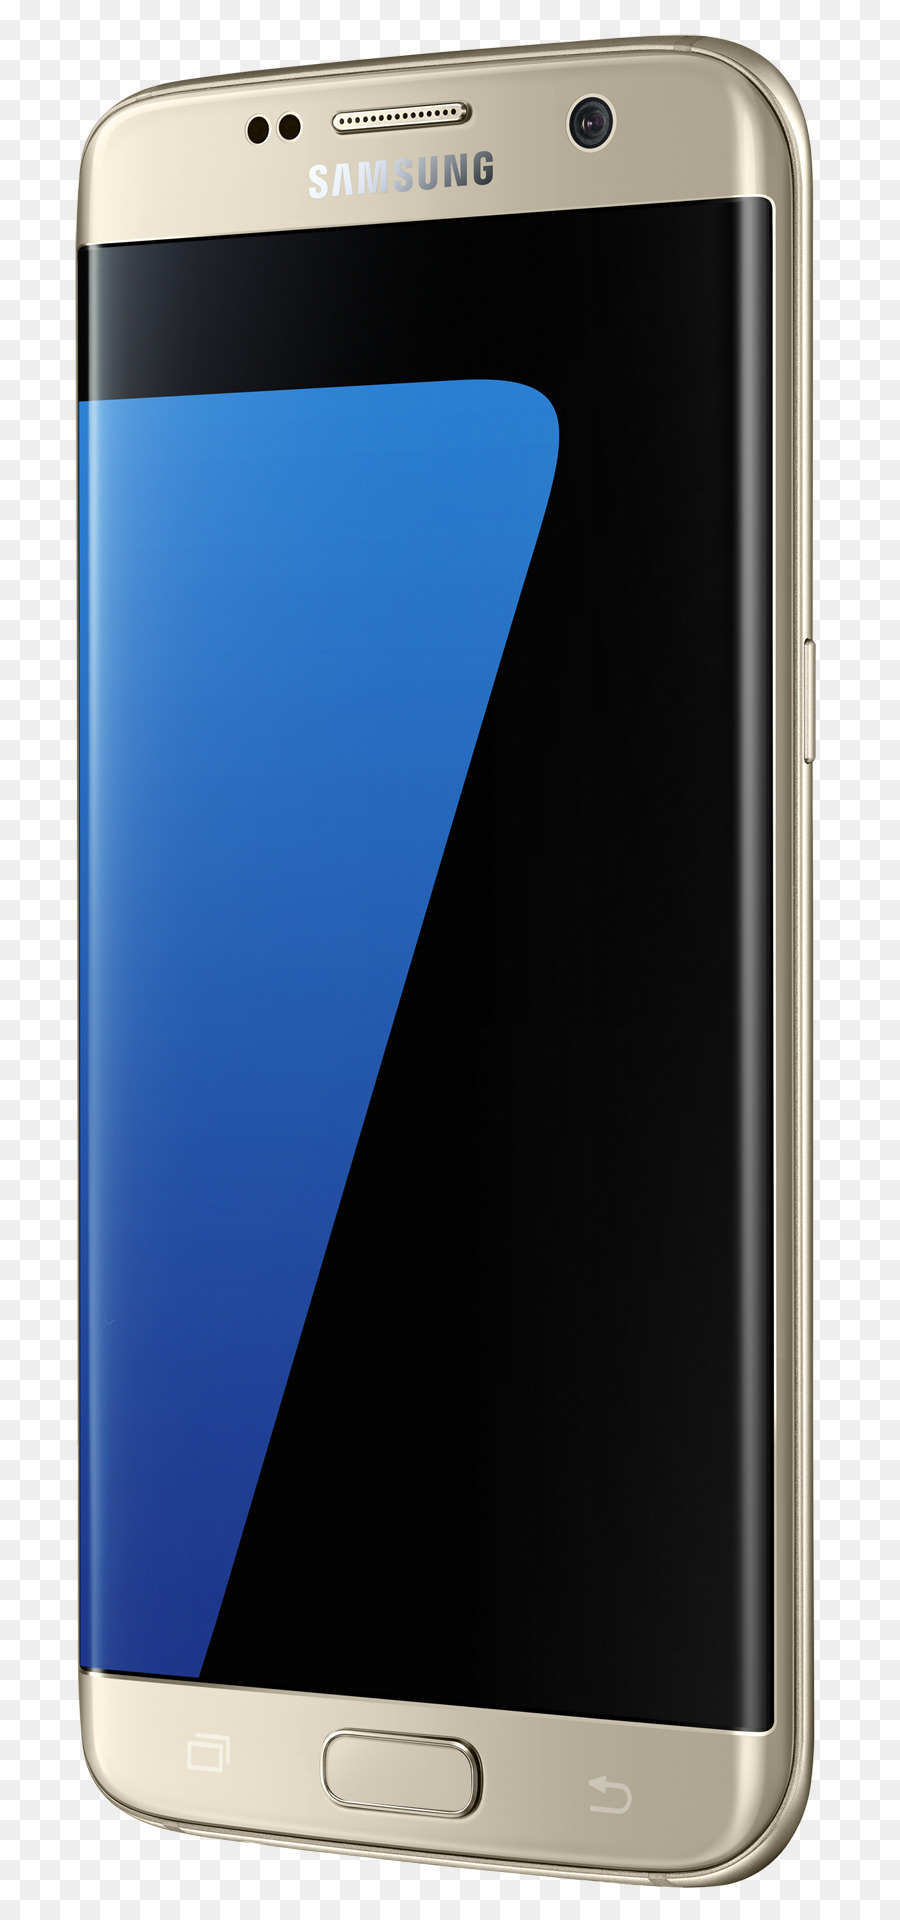 Samsung GALAXY S7 Bordo Smartphone 4G - negozio di telefonia mobile